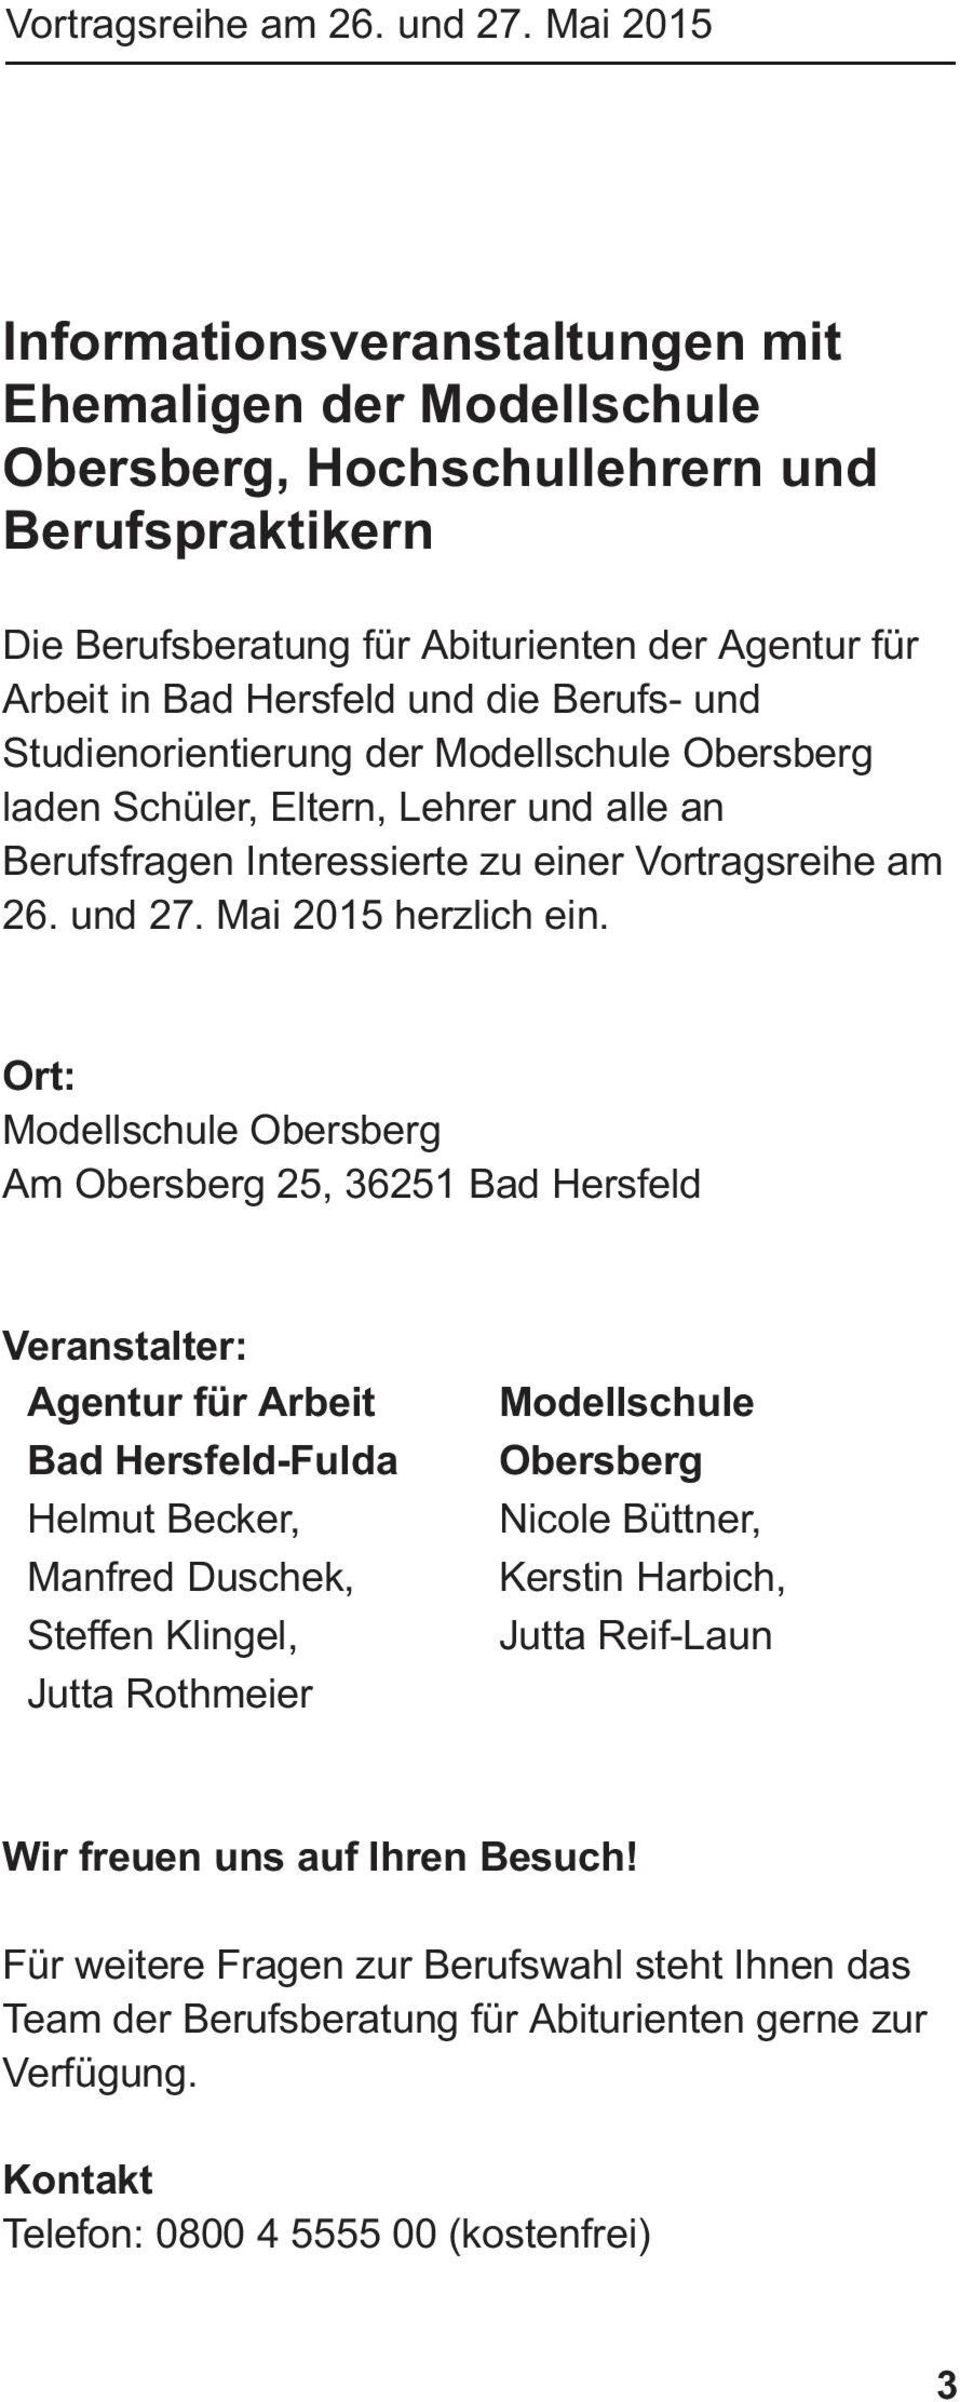 die Berufs- und Studienorientierung der Modellschule Obersberg laden Schüler, Eltern, Lehrer und alle an Berufsfragen Interessierte zu einer  Mai 2015 herzlich ein.